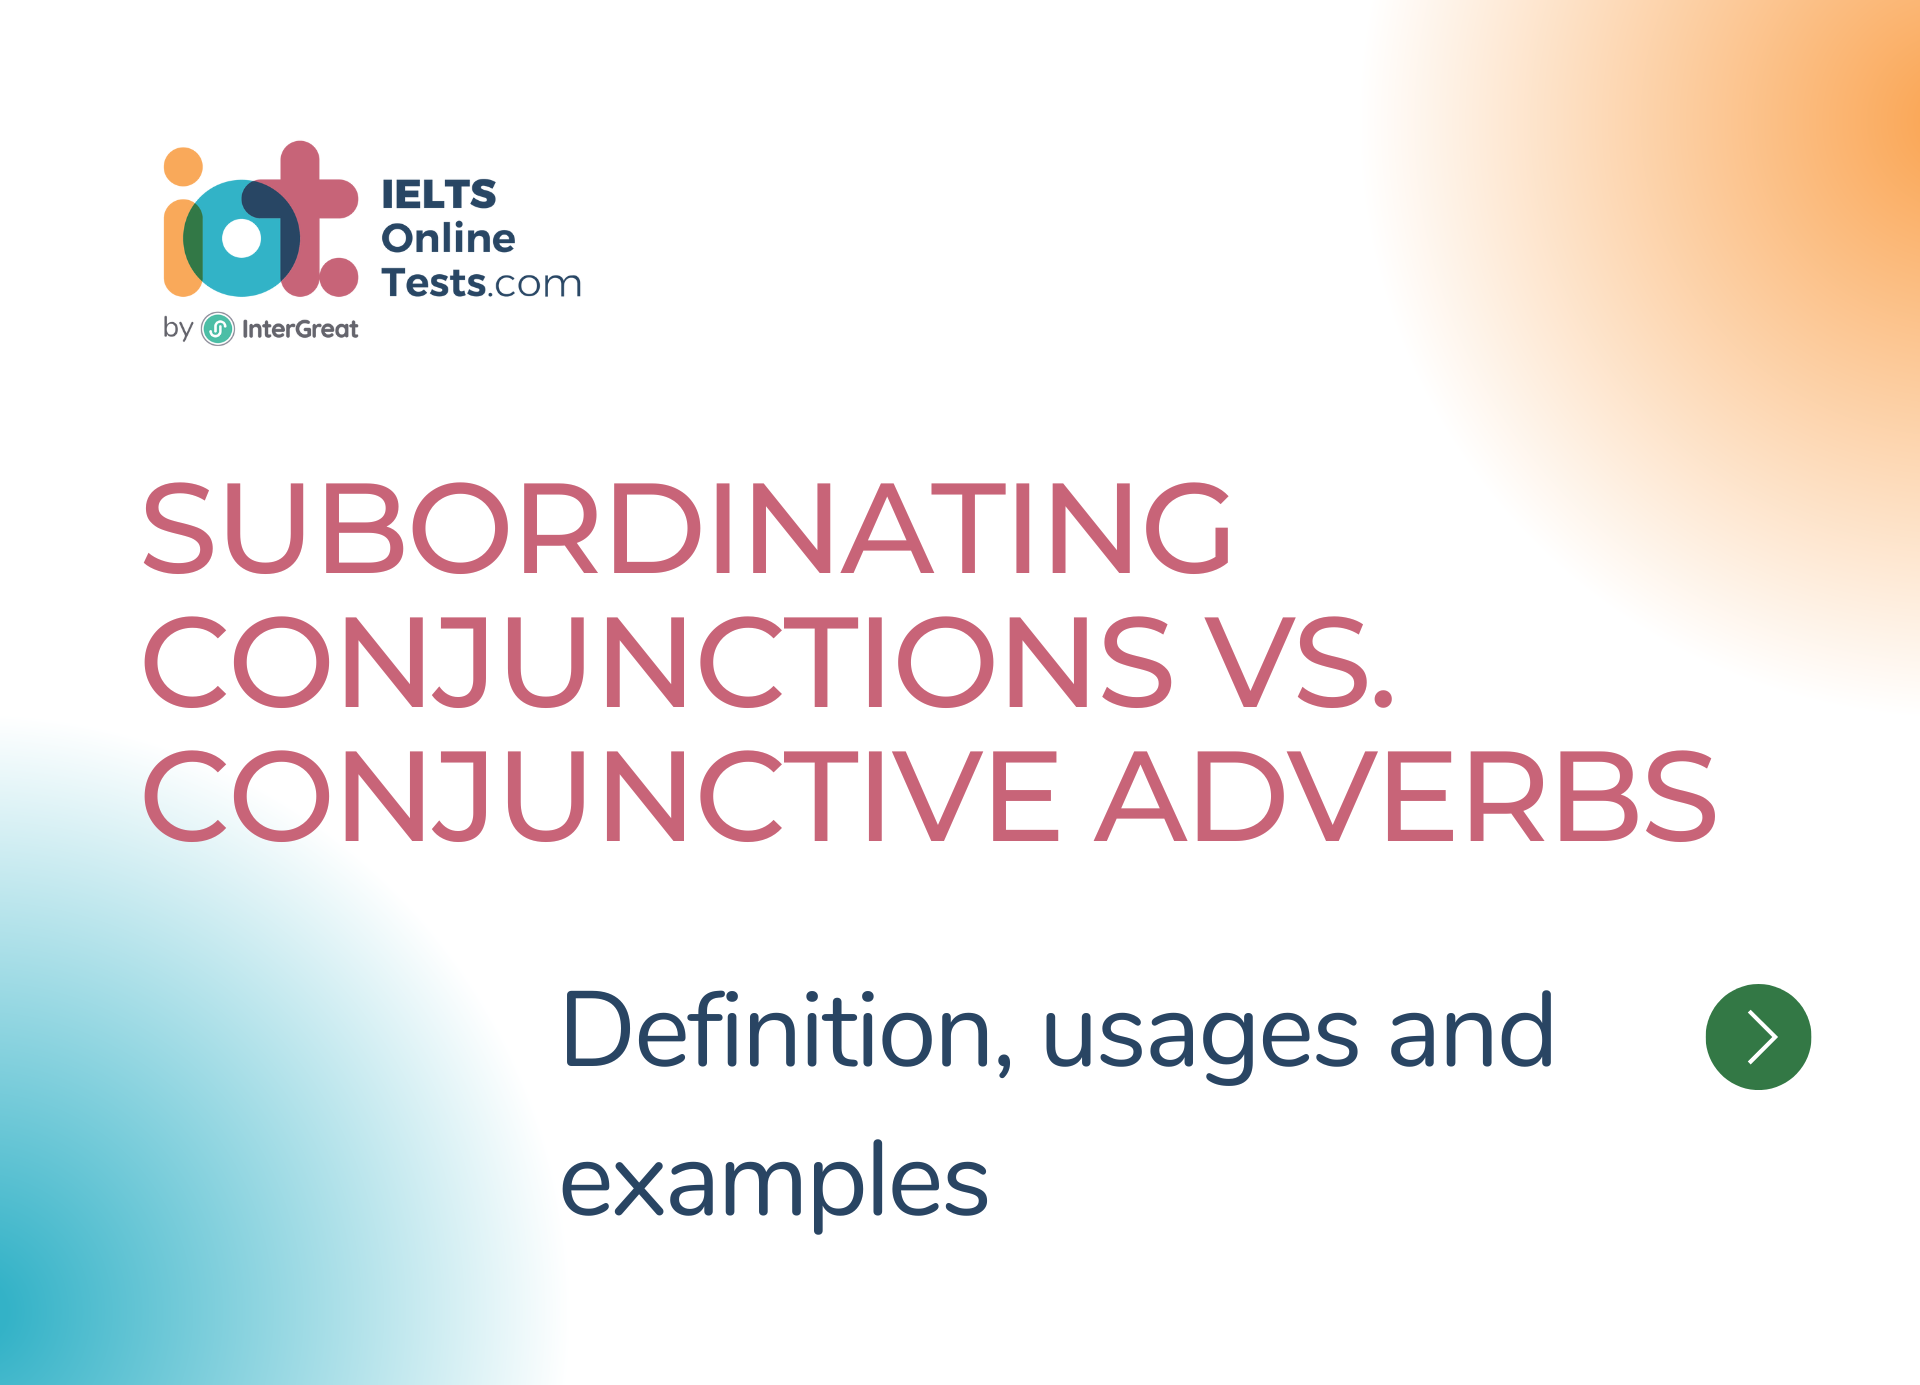 Sự khác biệt chính giữa liên từ phụ thuộc và trạng từ liên kết (Subordinating Conjunctions vs. Conjunctive Adverbs)